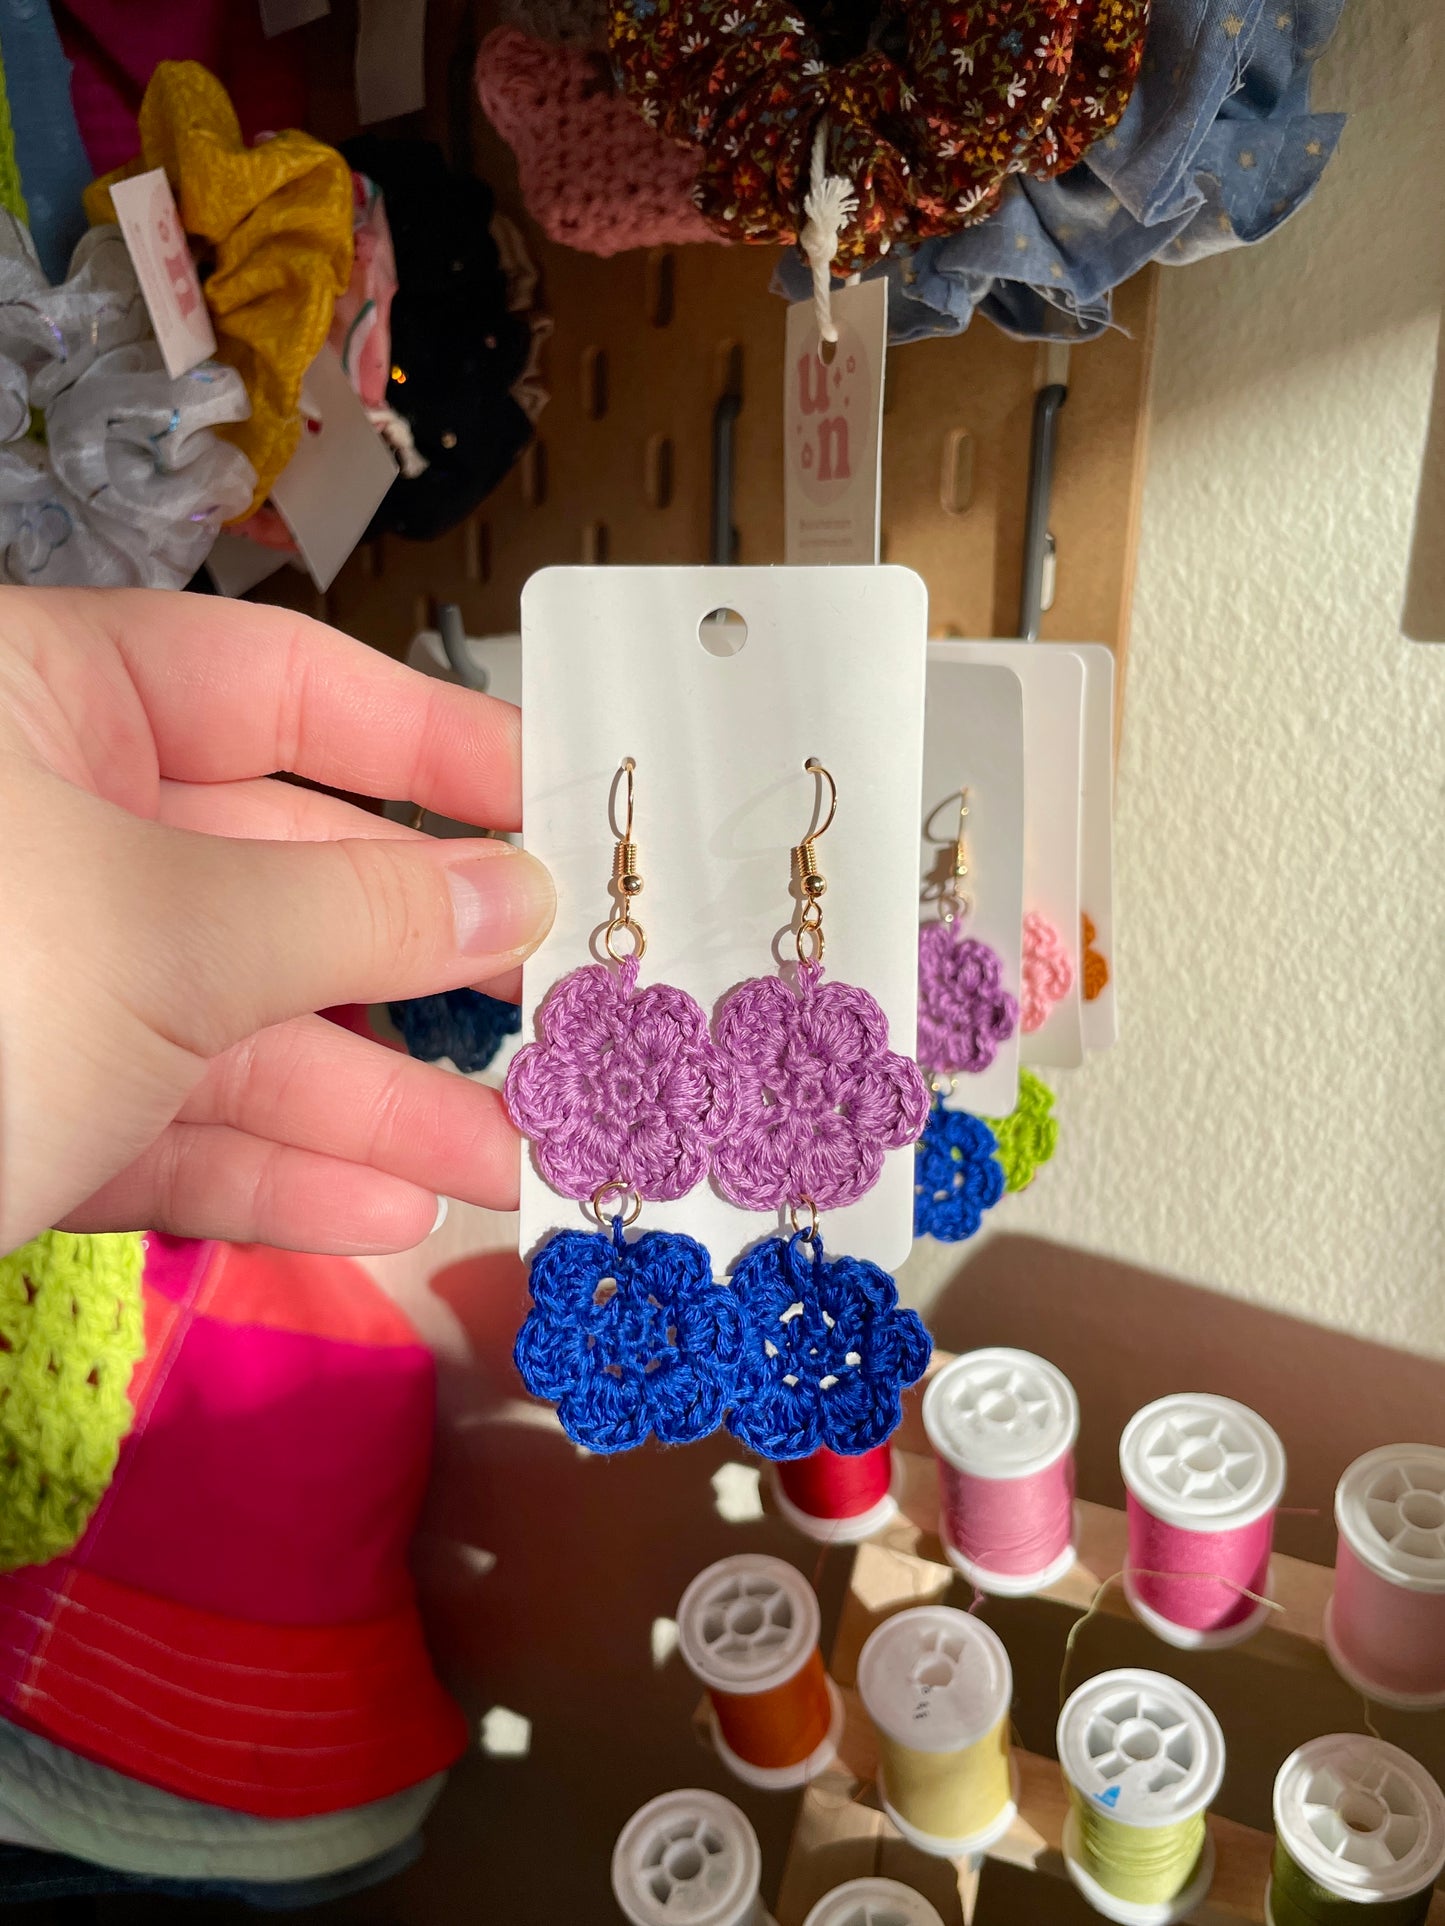 Lavender/Cobalt Blue Crochet Flower Earrings - Double